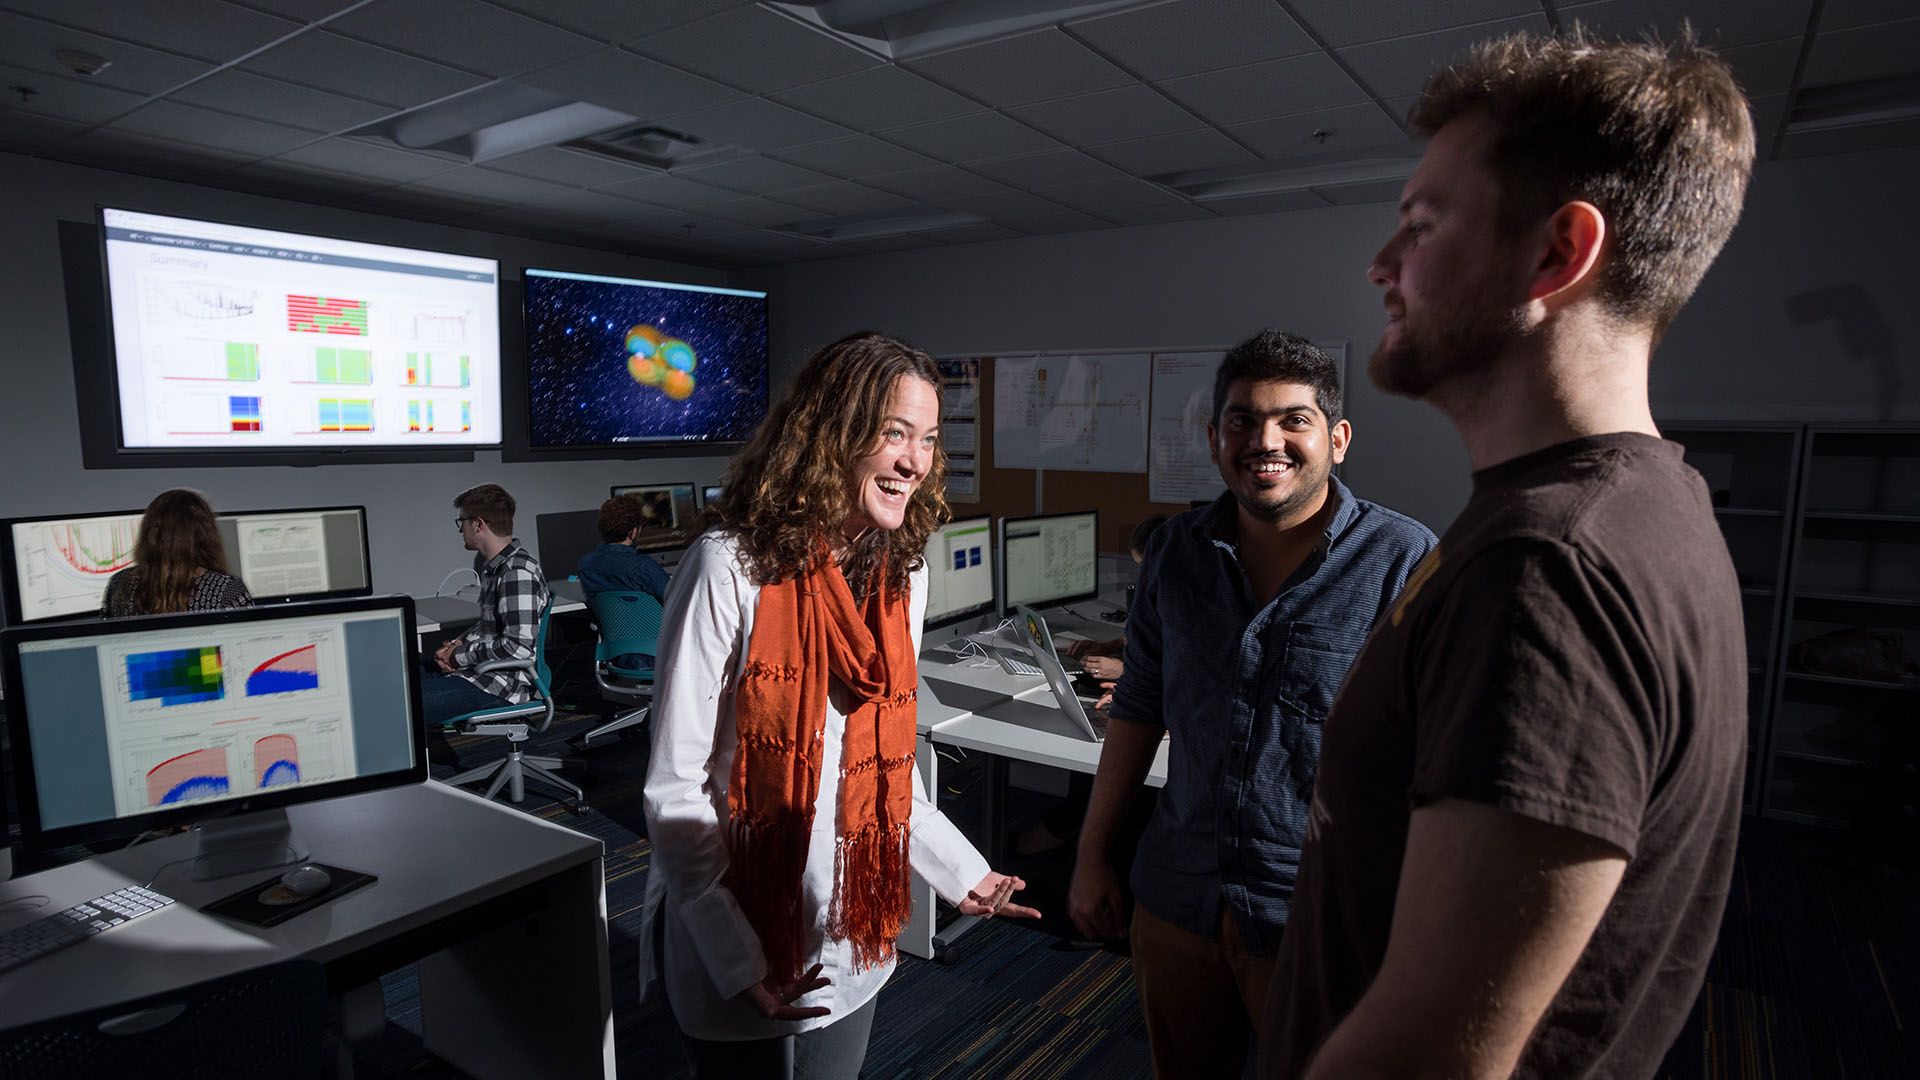 Doç. Dr. Deirdre Shoemaker, Doktora adayı Karan Jani, ve Postdoktora araştırmacısı James Clark LIGO buluşunun astrofizik alanındaki olası sonuçlarını tartışırken. Fotoğraf: Rob Felt.